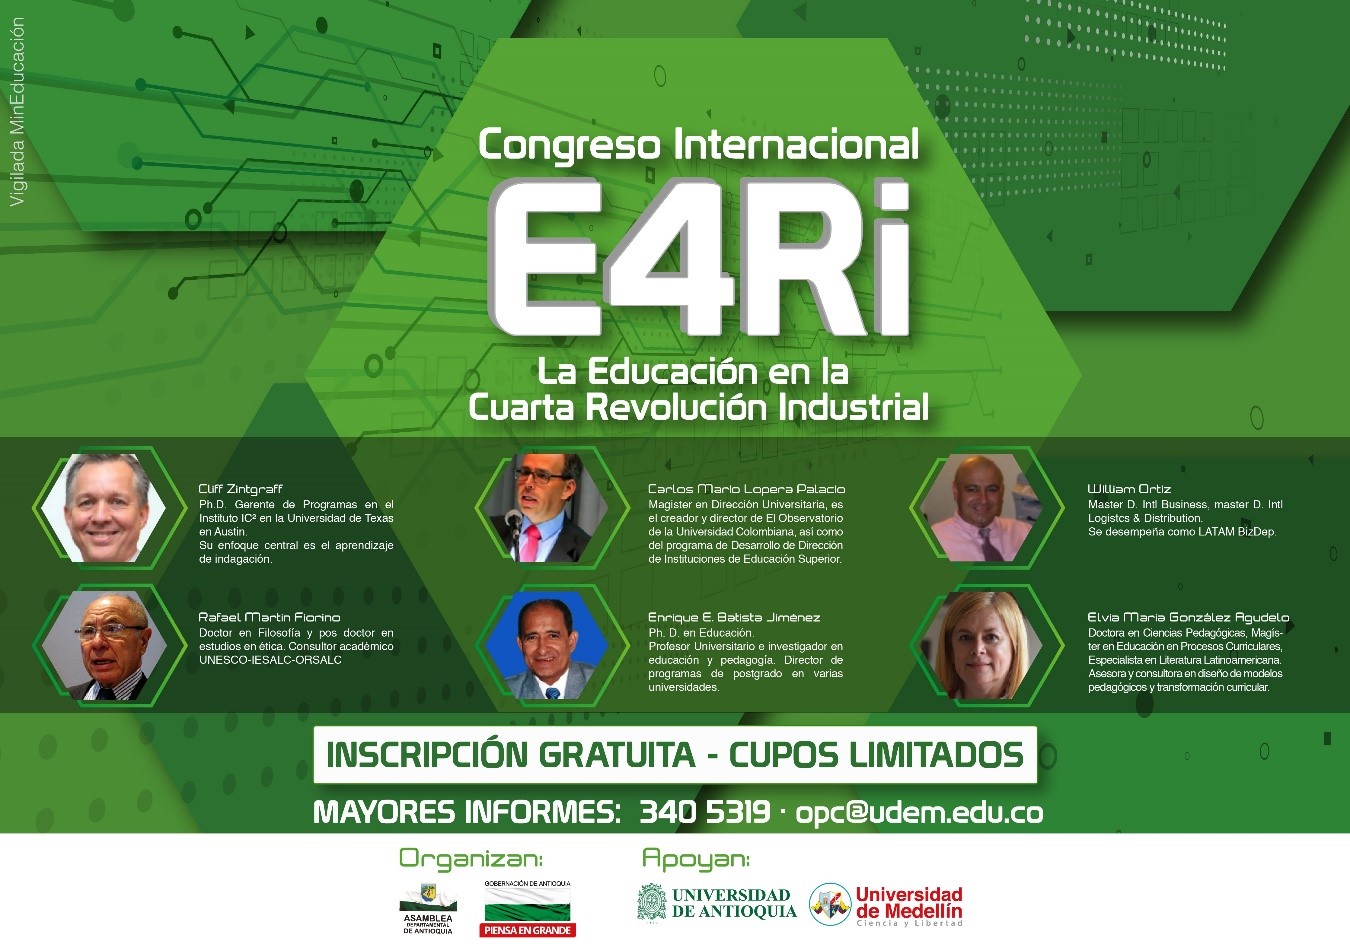 Congreso Internacional E4Ri